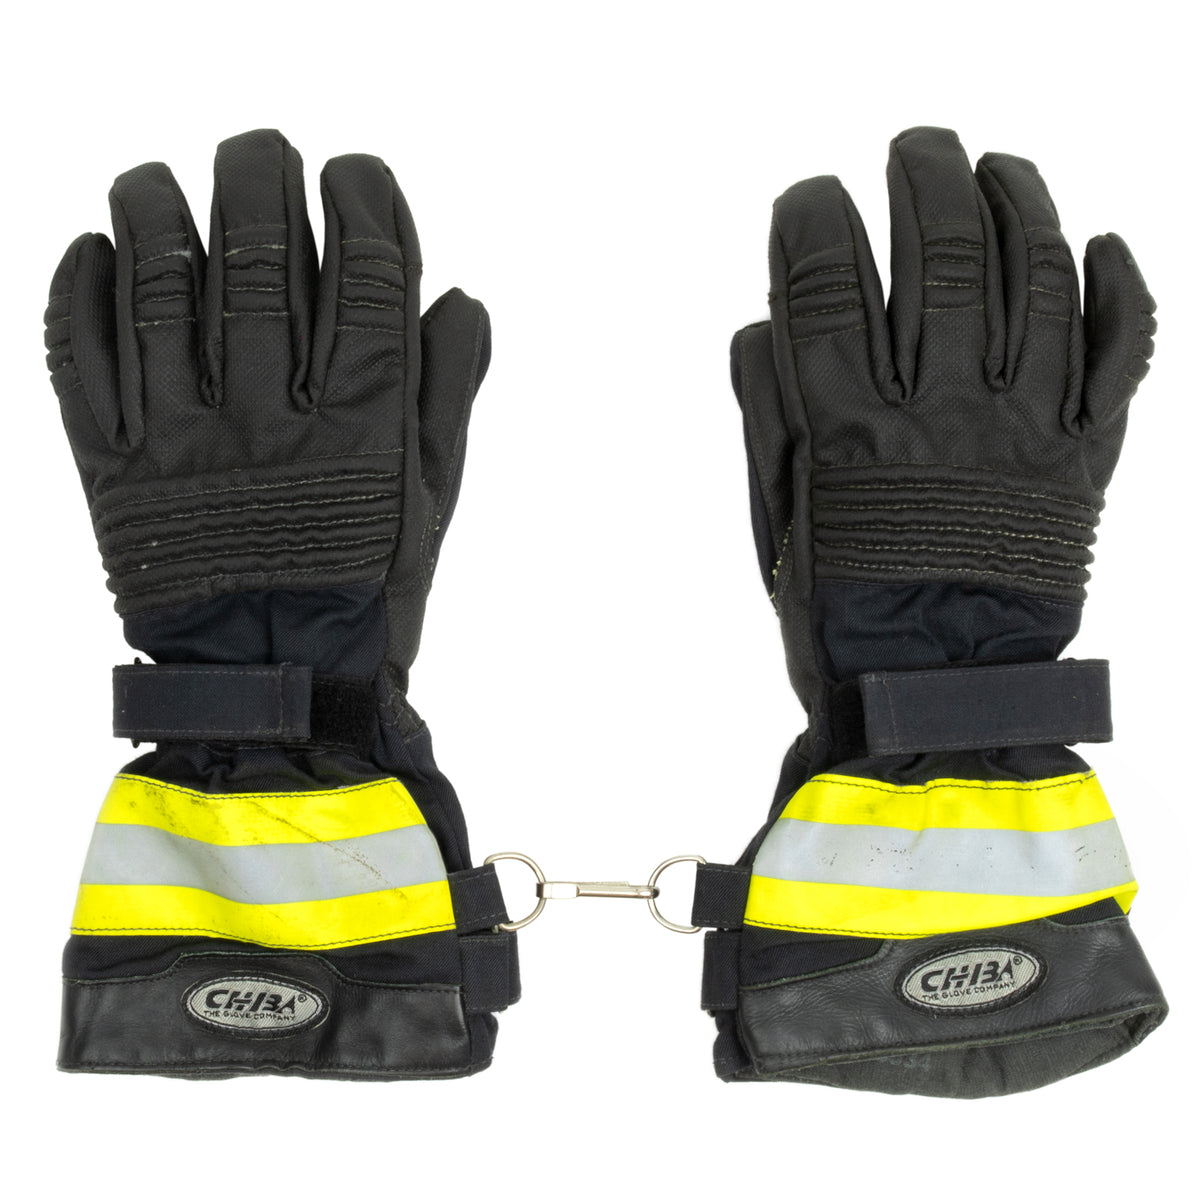 German Waterproof Hi-Vis Reflective Work Gloves